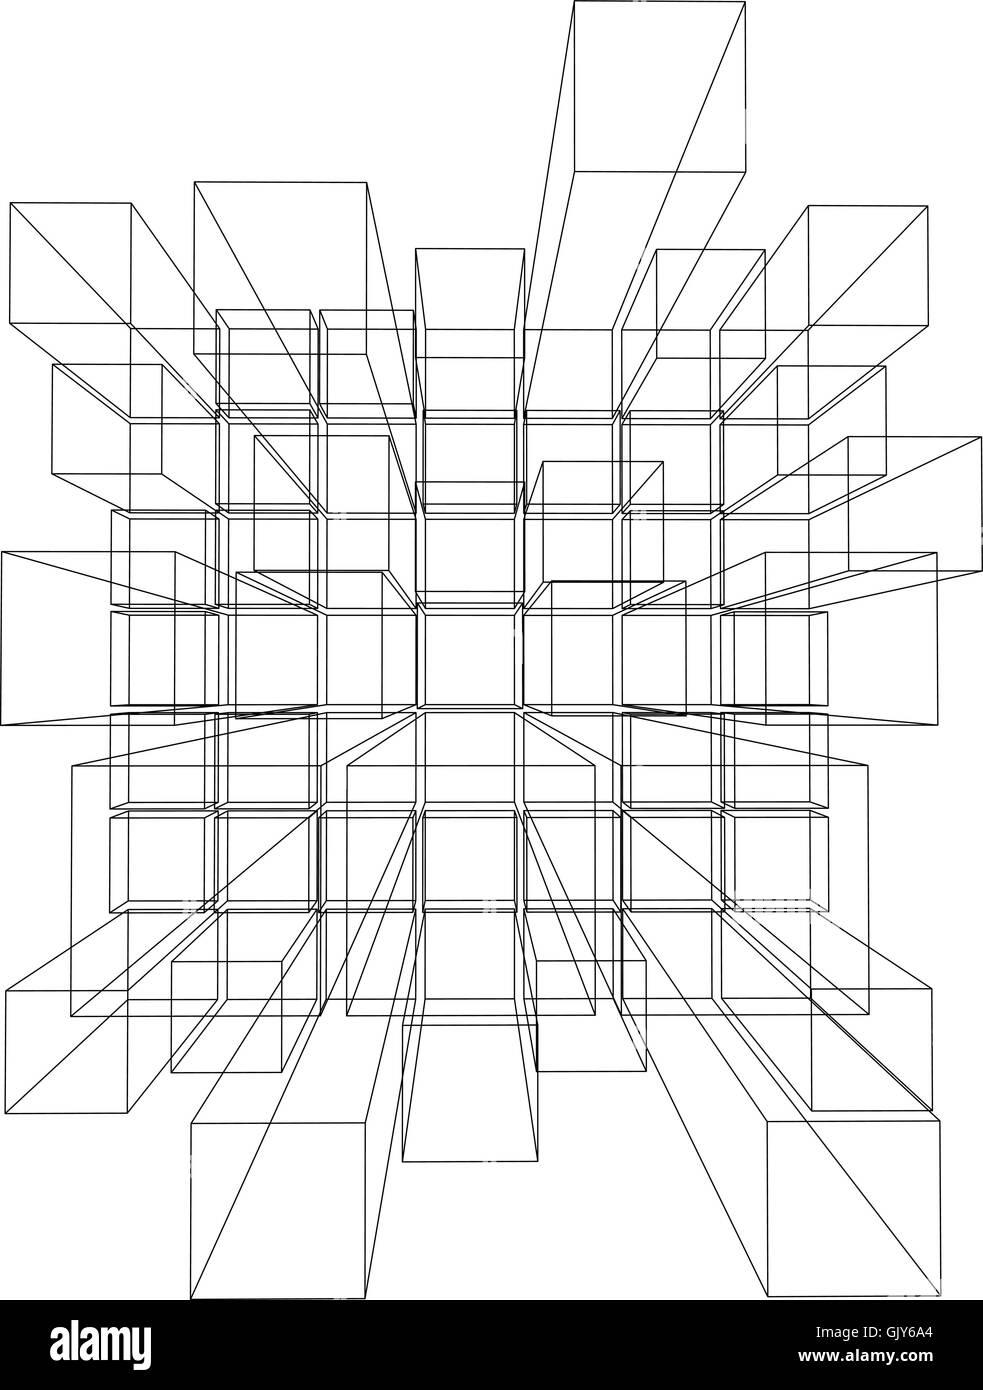 Illustrazione Vettoriale di 3d cubi Illustrazione Vettoriale